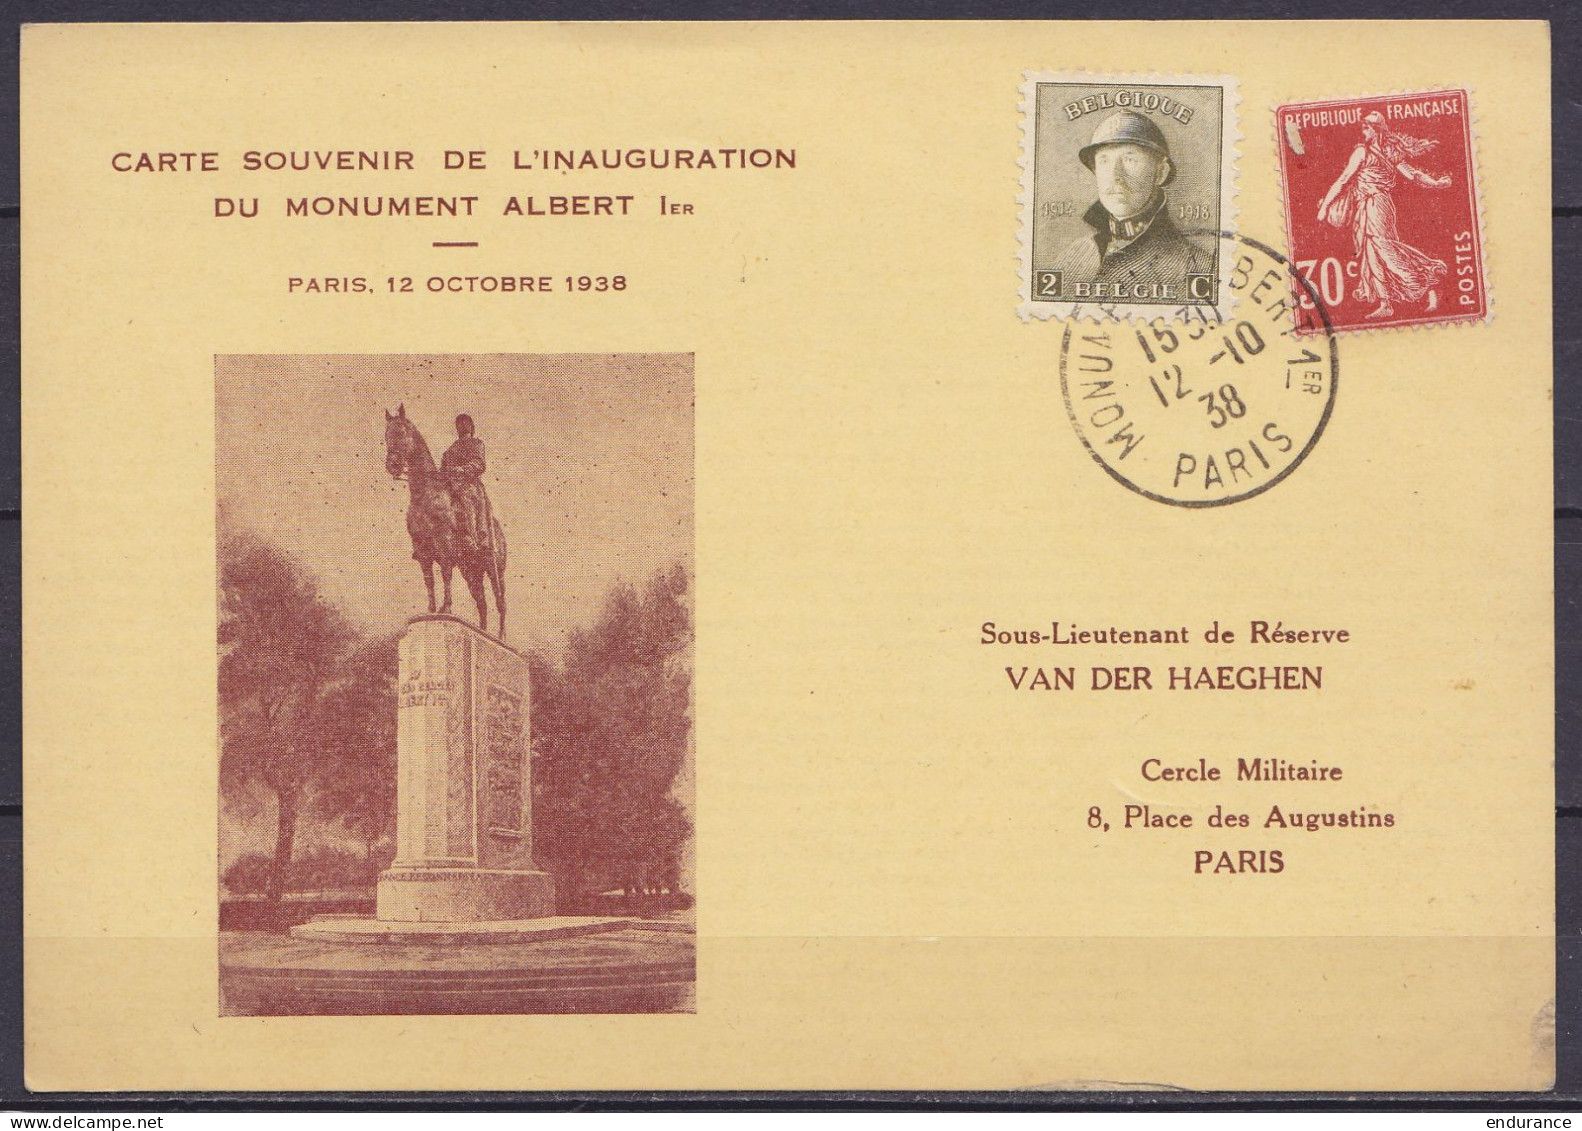 Carte Souvenir De L'inauguration Du Monument Albert 1e Affr. N°166 + Semeuse 30c Càd "MONUMENT ALBERT 1e /12-10-1938/ PA - 1919-1920 Roi Casqué